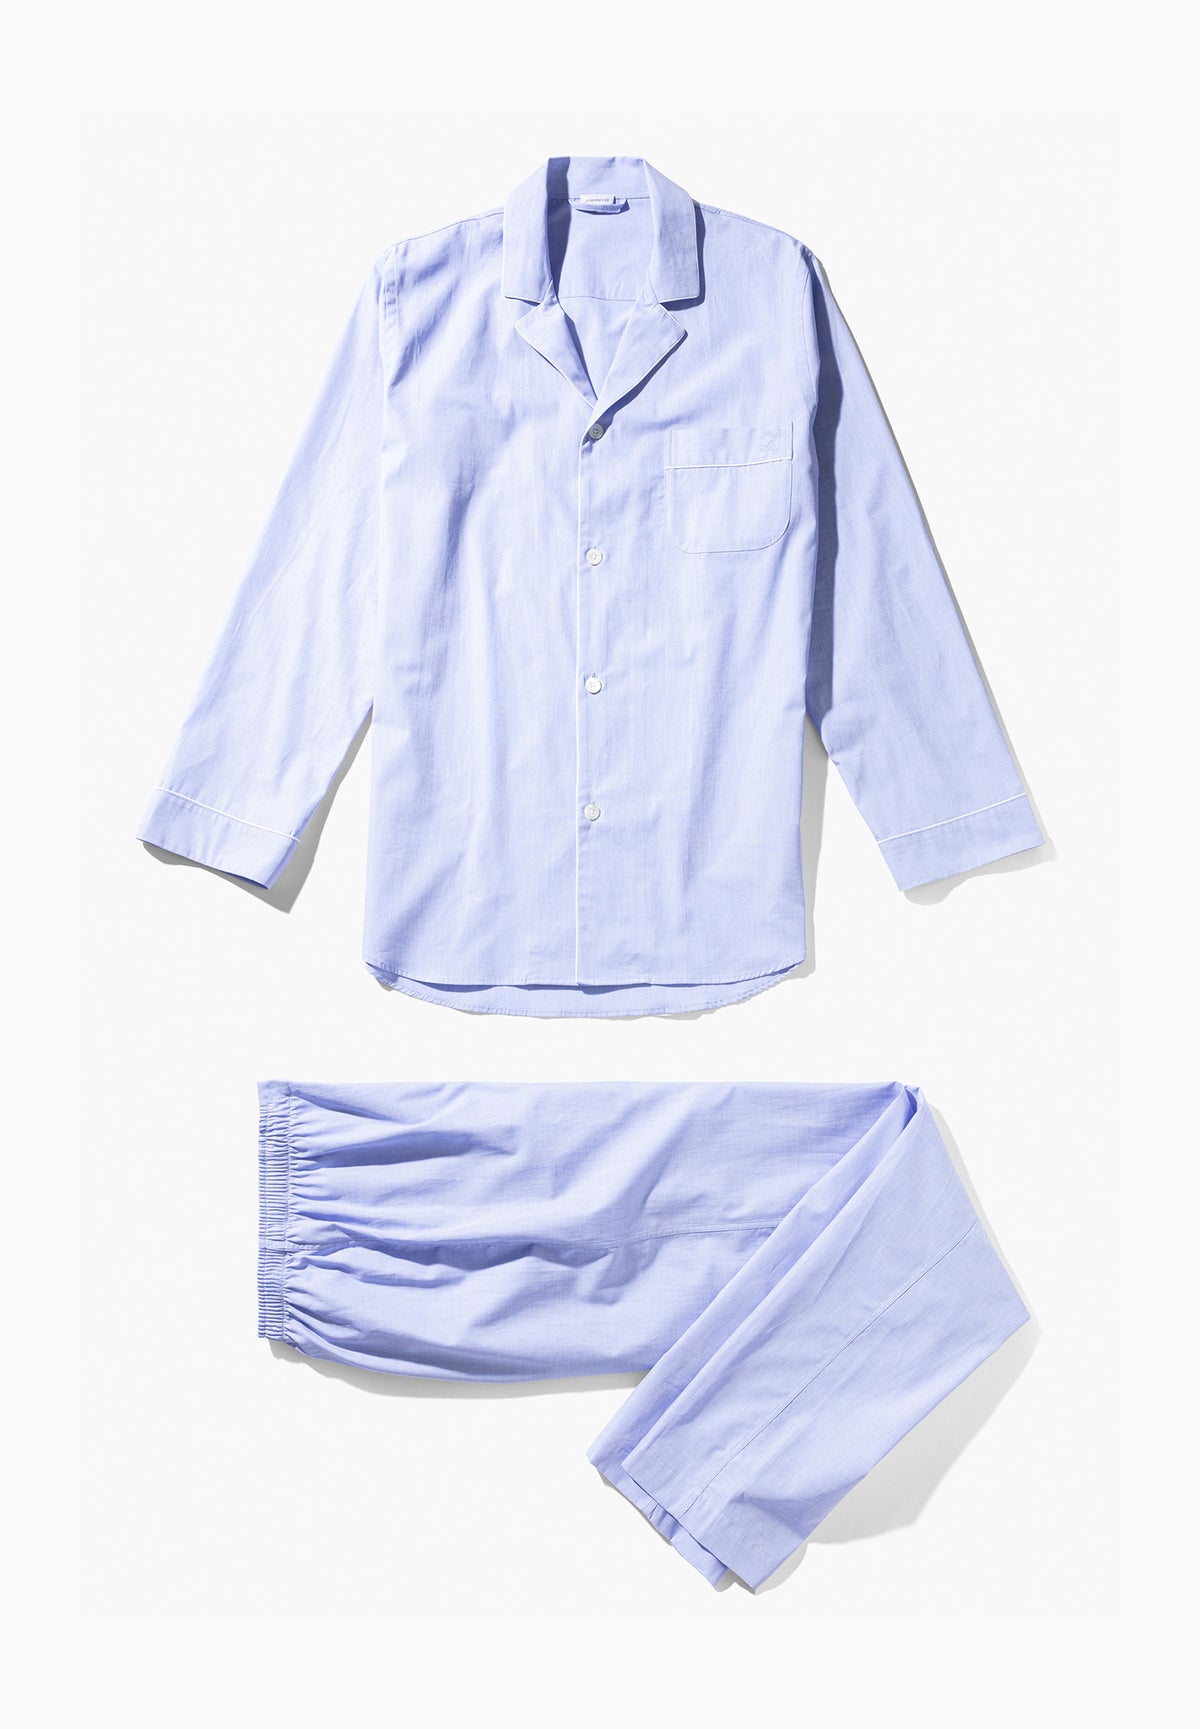 Woven Nightwear | Pyjama longues - light blue